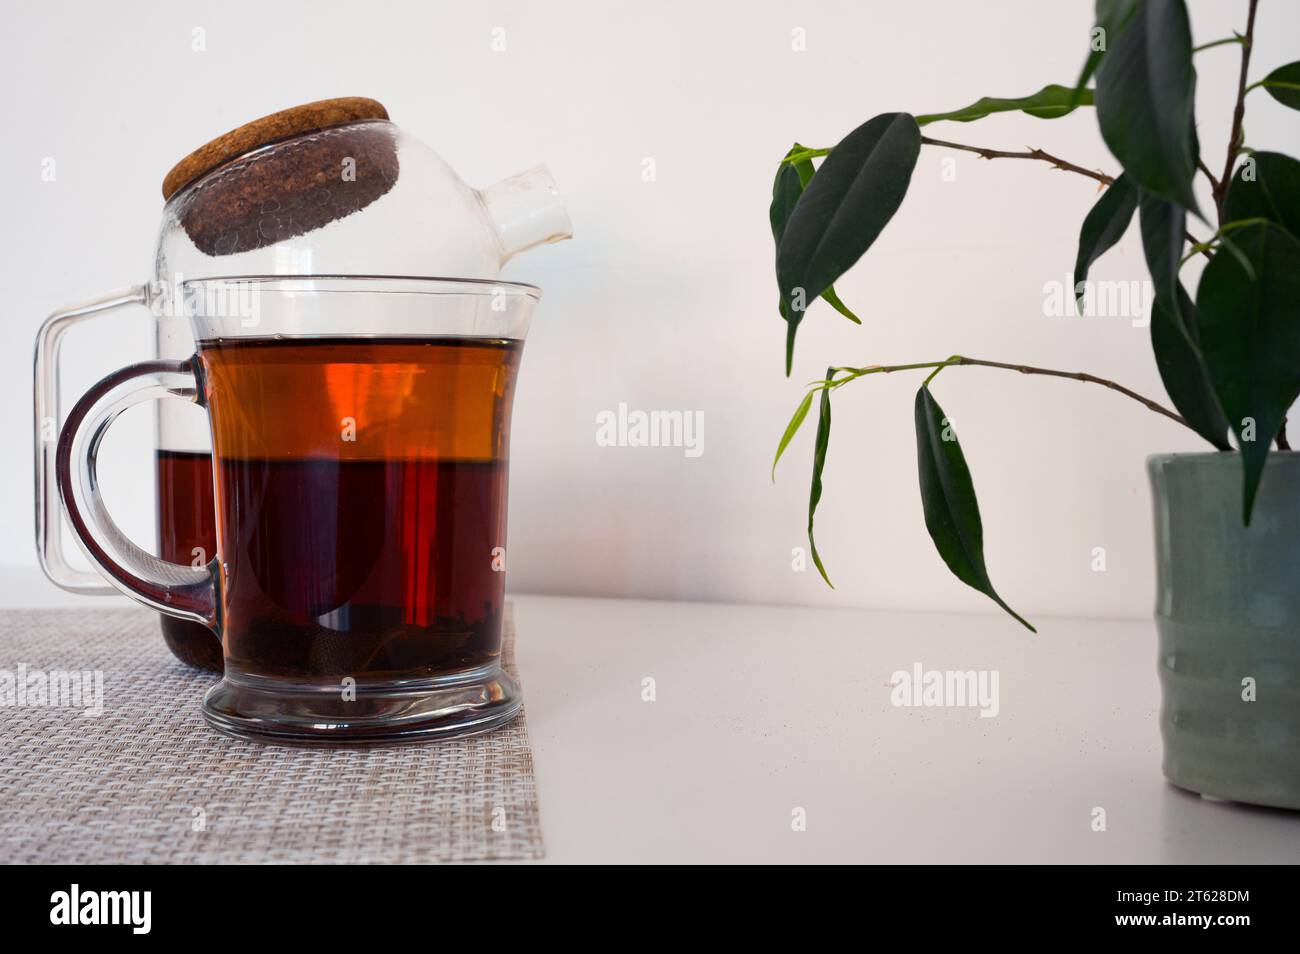 Thé noir dans une tasse en verre et théière en verre fraîchement infusée sur une serviette et feuilles vertes avec fond blanc Banque D'Images